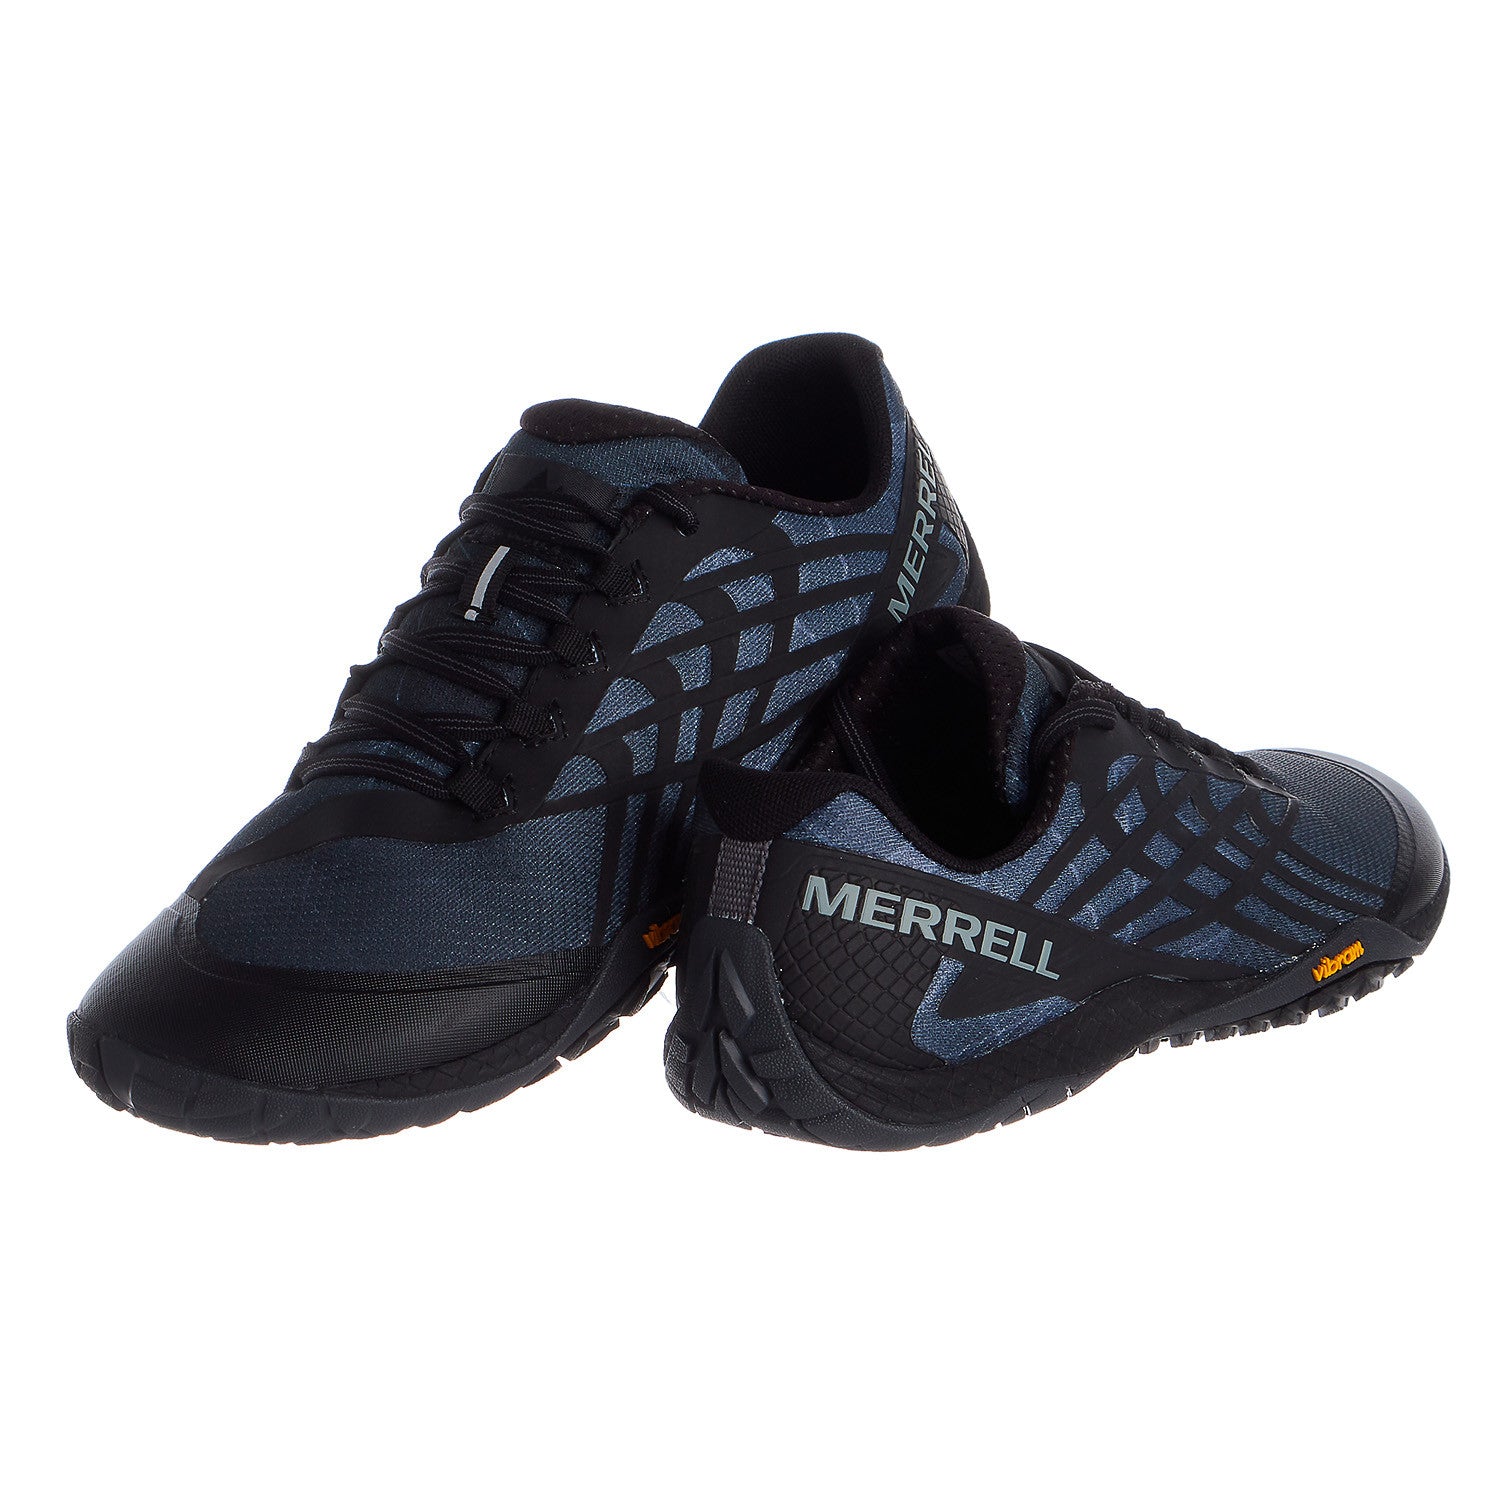 Merrell Glove 4 Trail Runner - Men's - Shoplifestyle